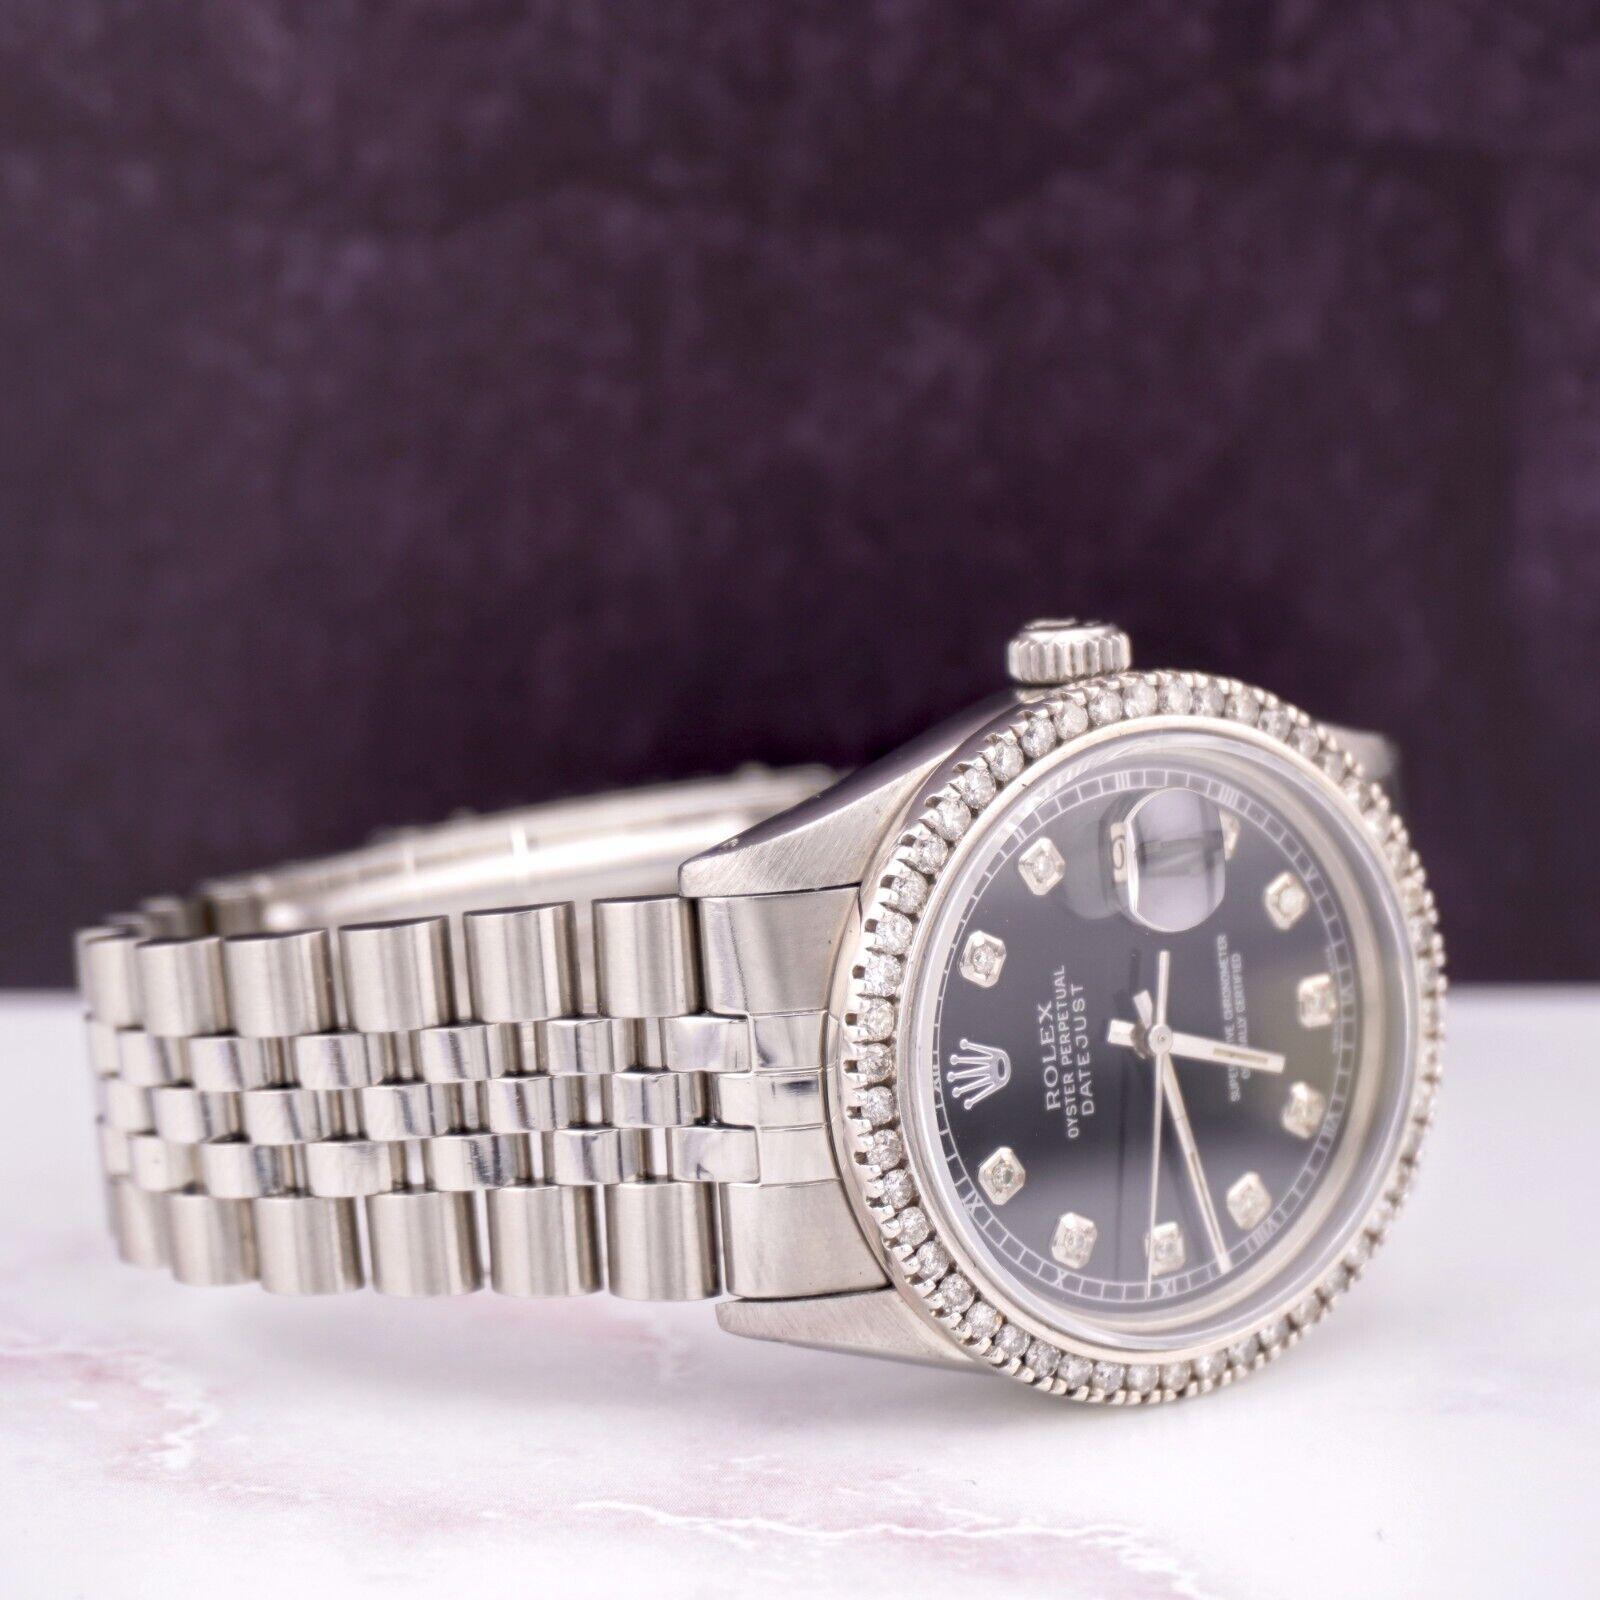 Montre Rolex Datejust 36mm. Une montre d'occasion avec boîte cadeau. La montre est 100% authentique et est accompagnée d'une carte d'authenticité. La référence de la montre est 16014 et elle est en excellent état (voir photos). La couleur du cadran